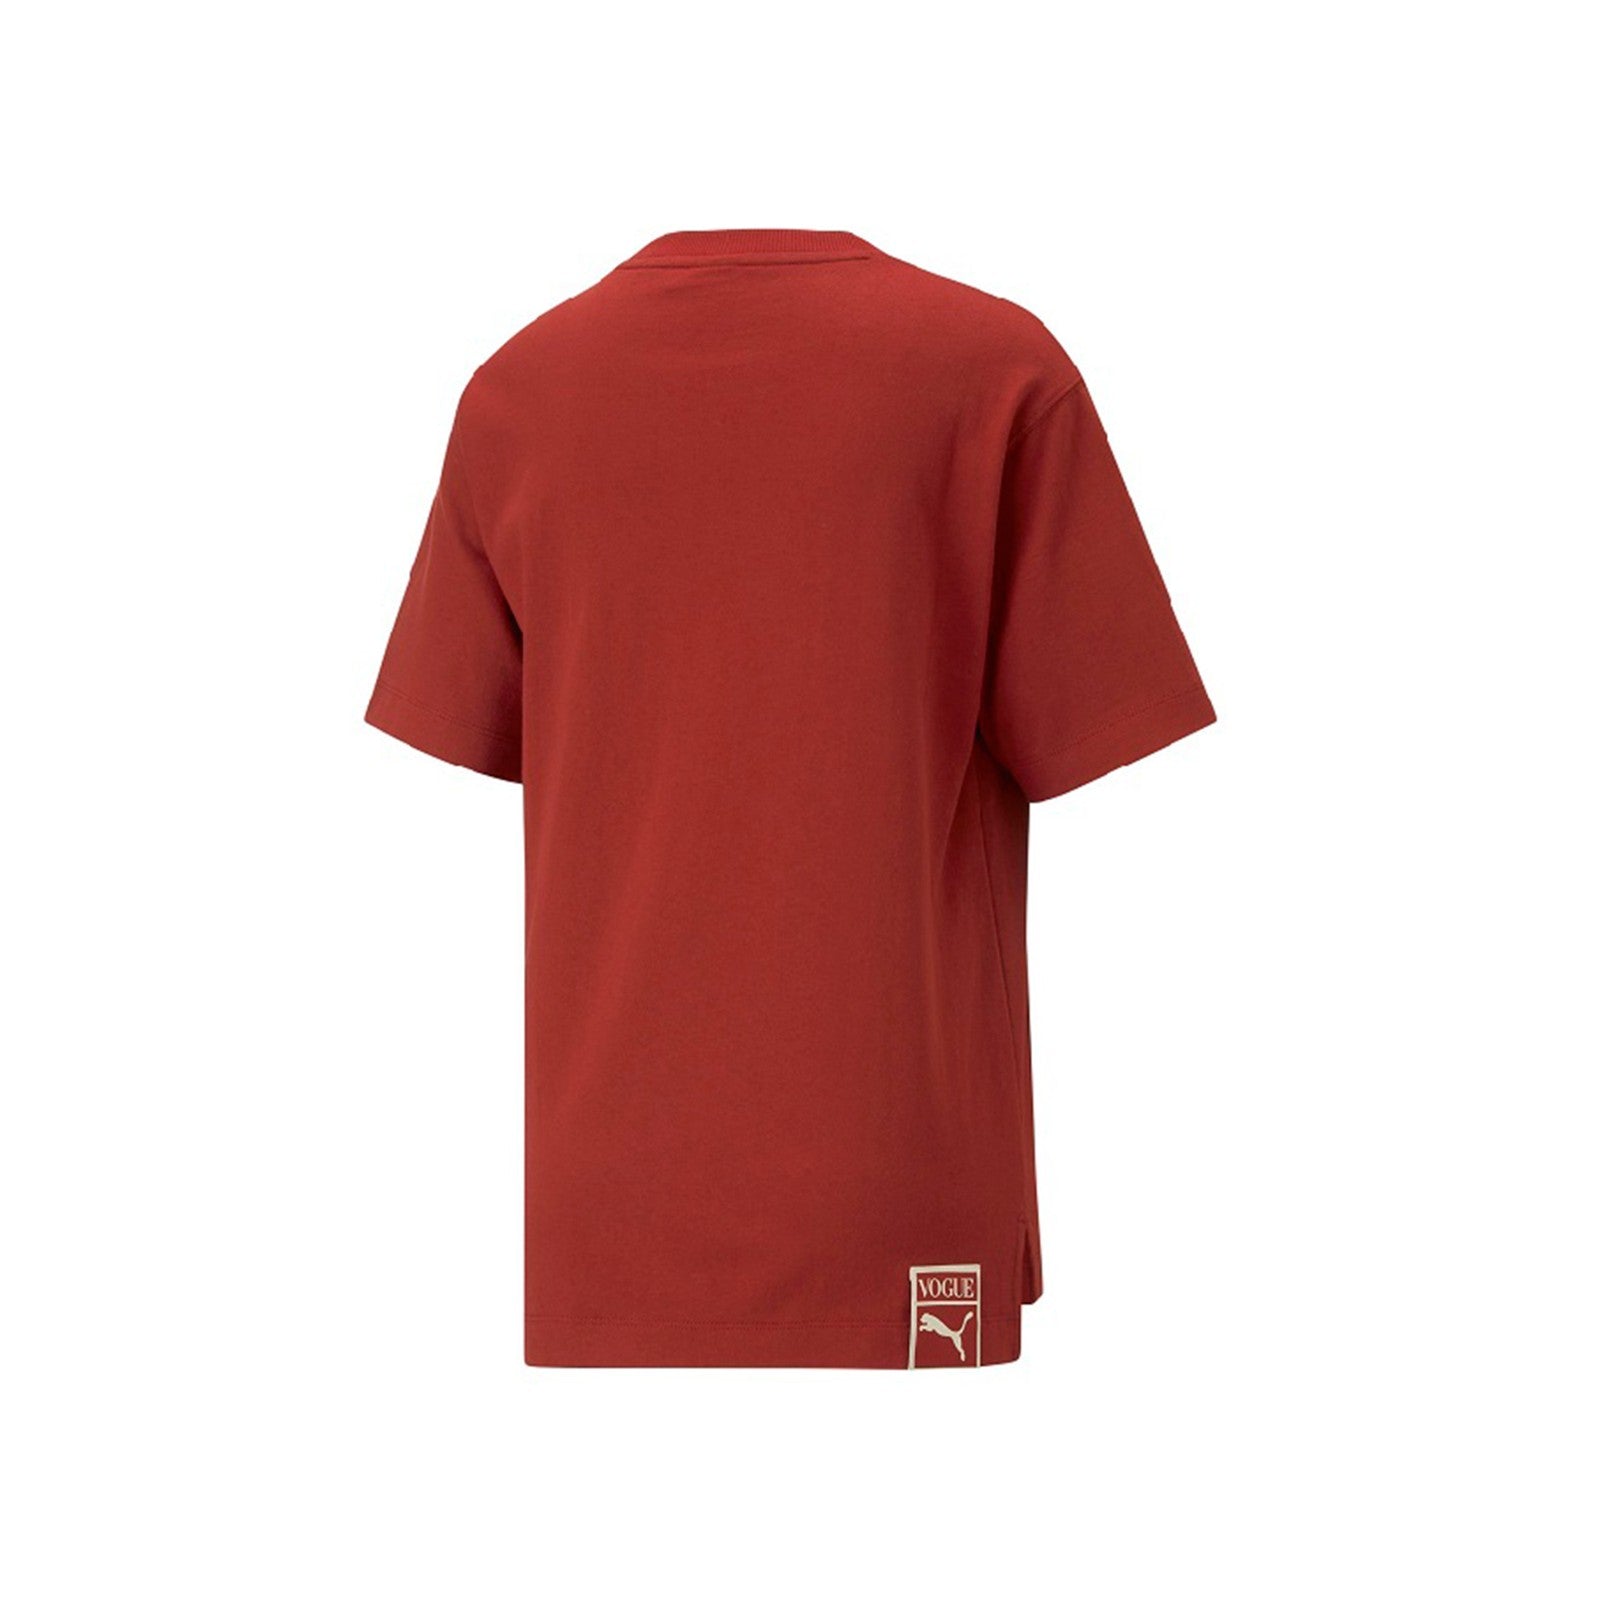 Puma x Vogue Relaxed Tee (Intense Red) Women's T-Shirt 536690-22